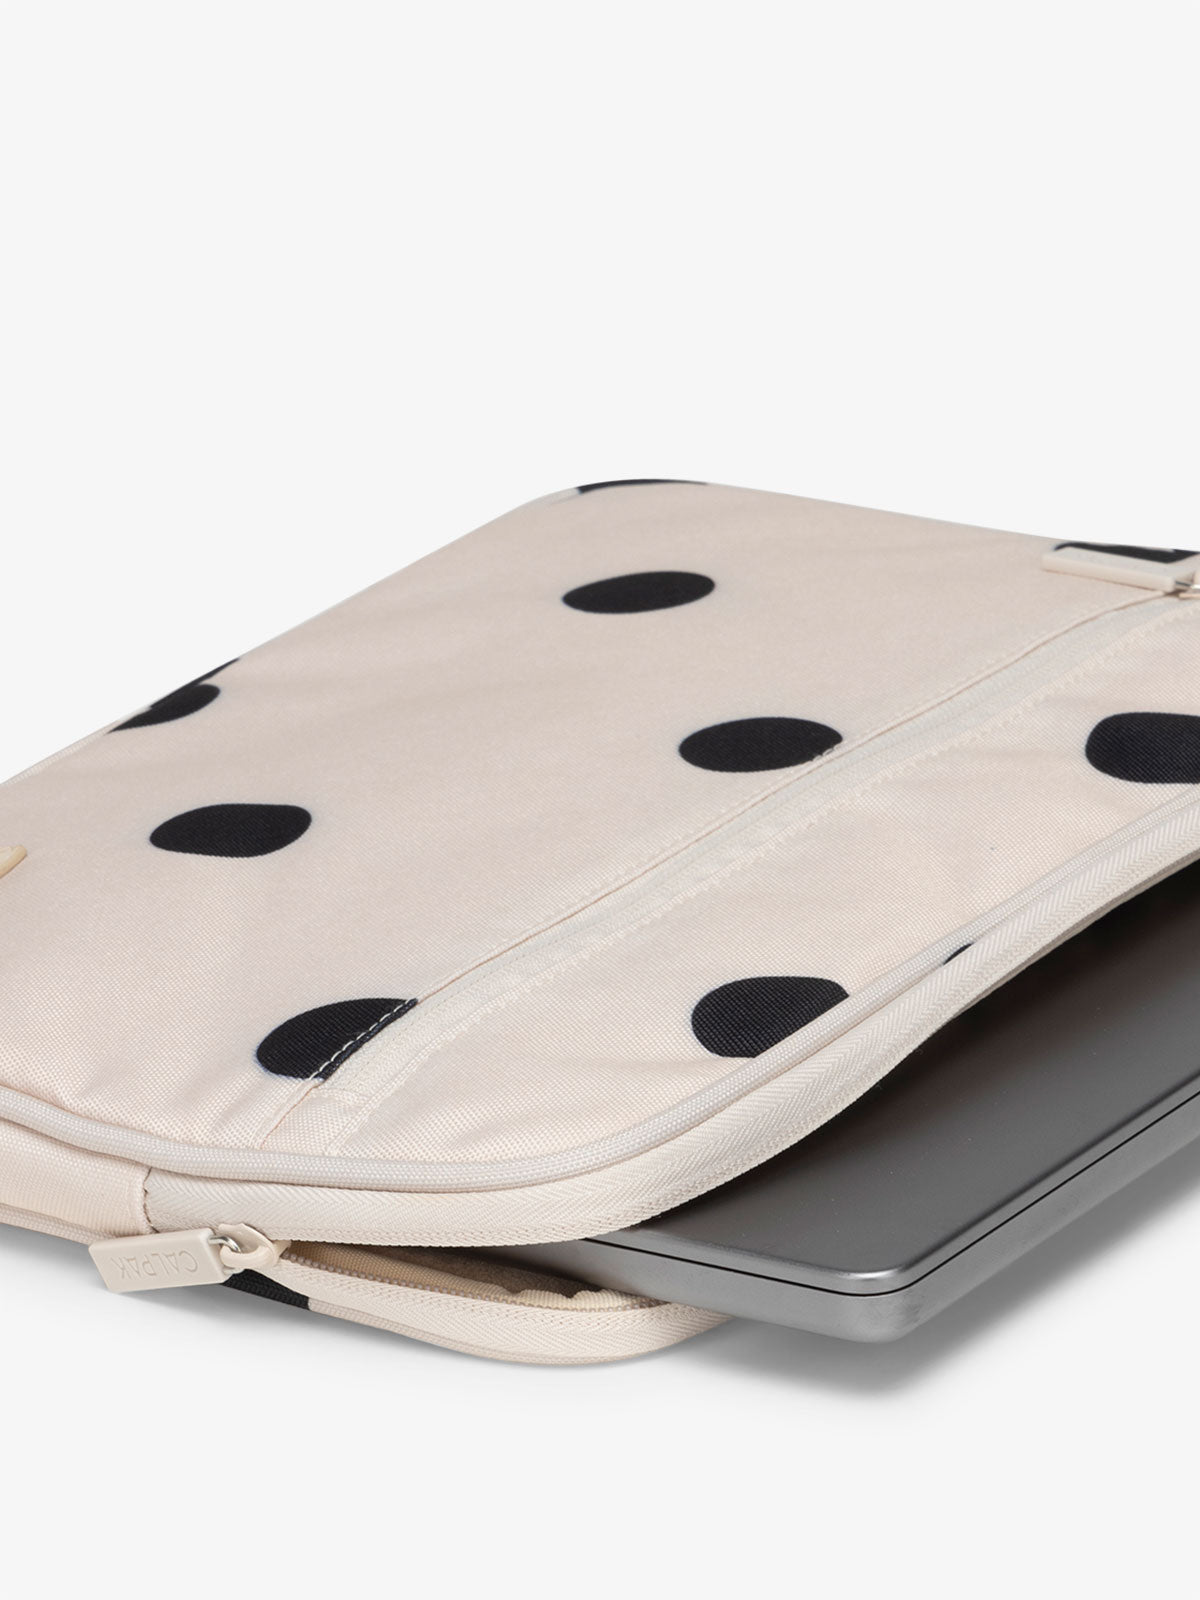 CALPAK 13-14 Inch padded Laptop sleeve for travel in polka dot